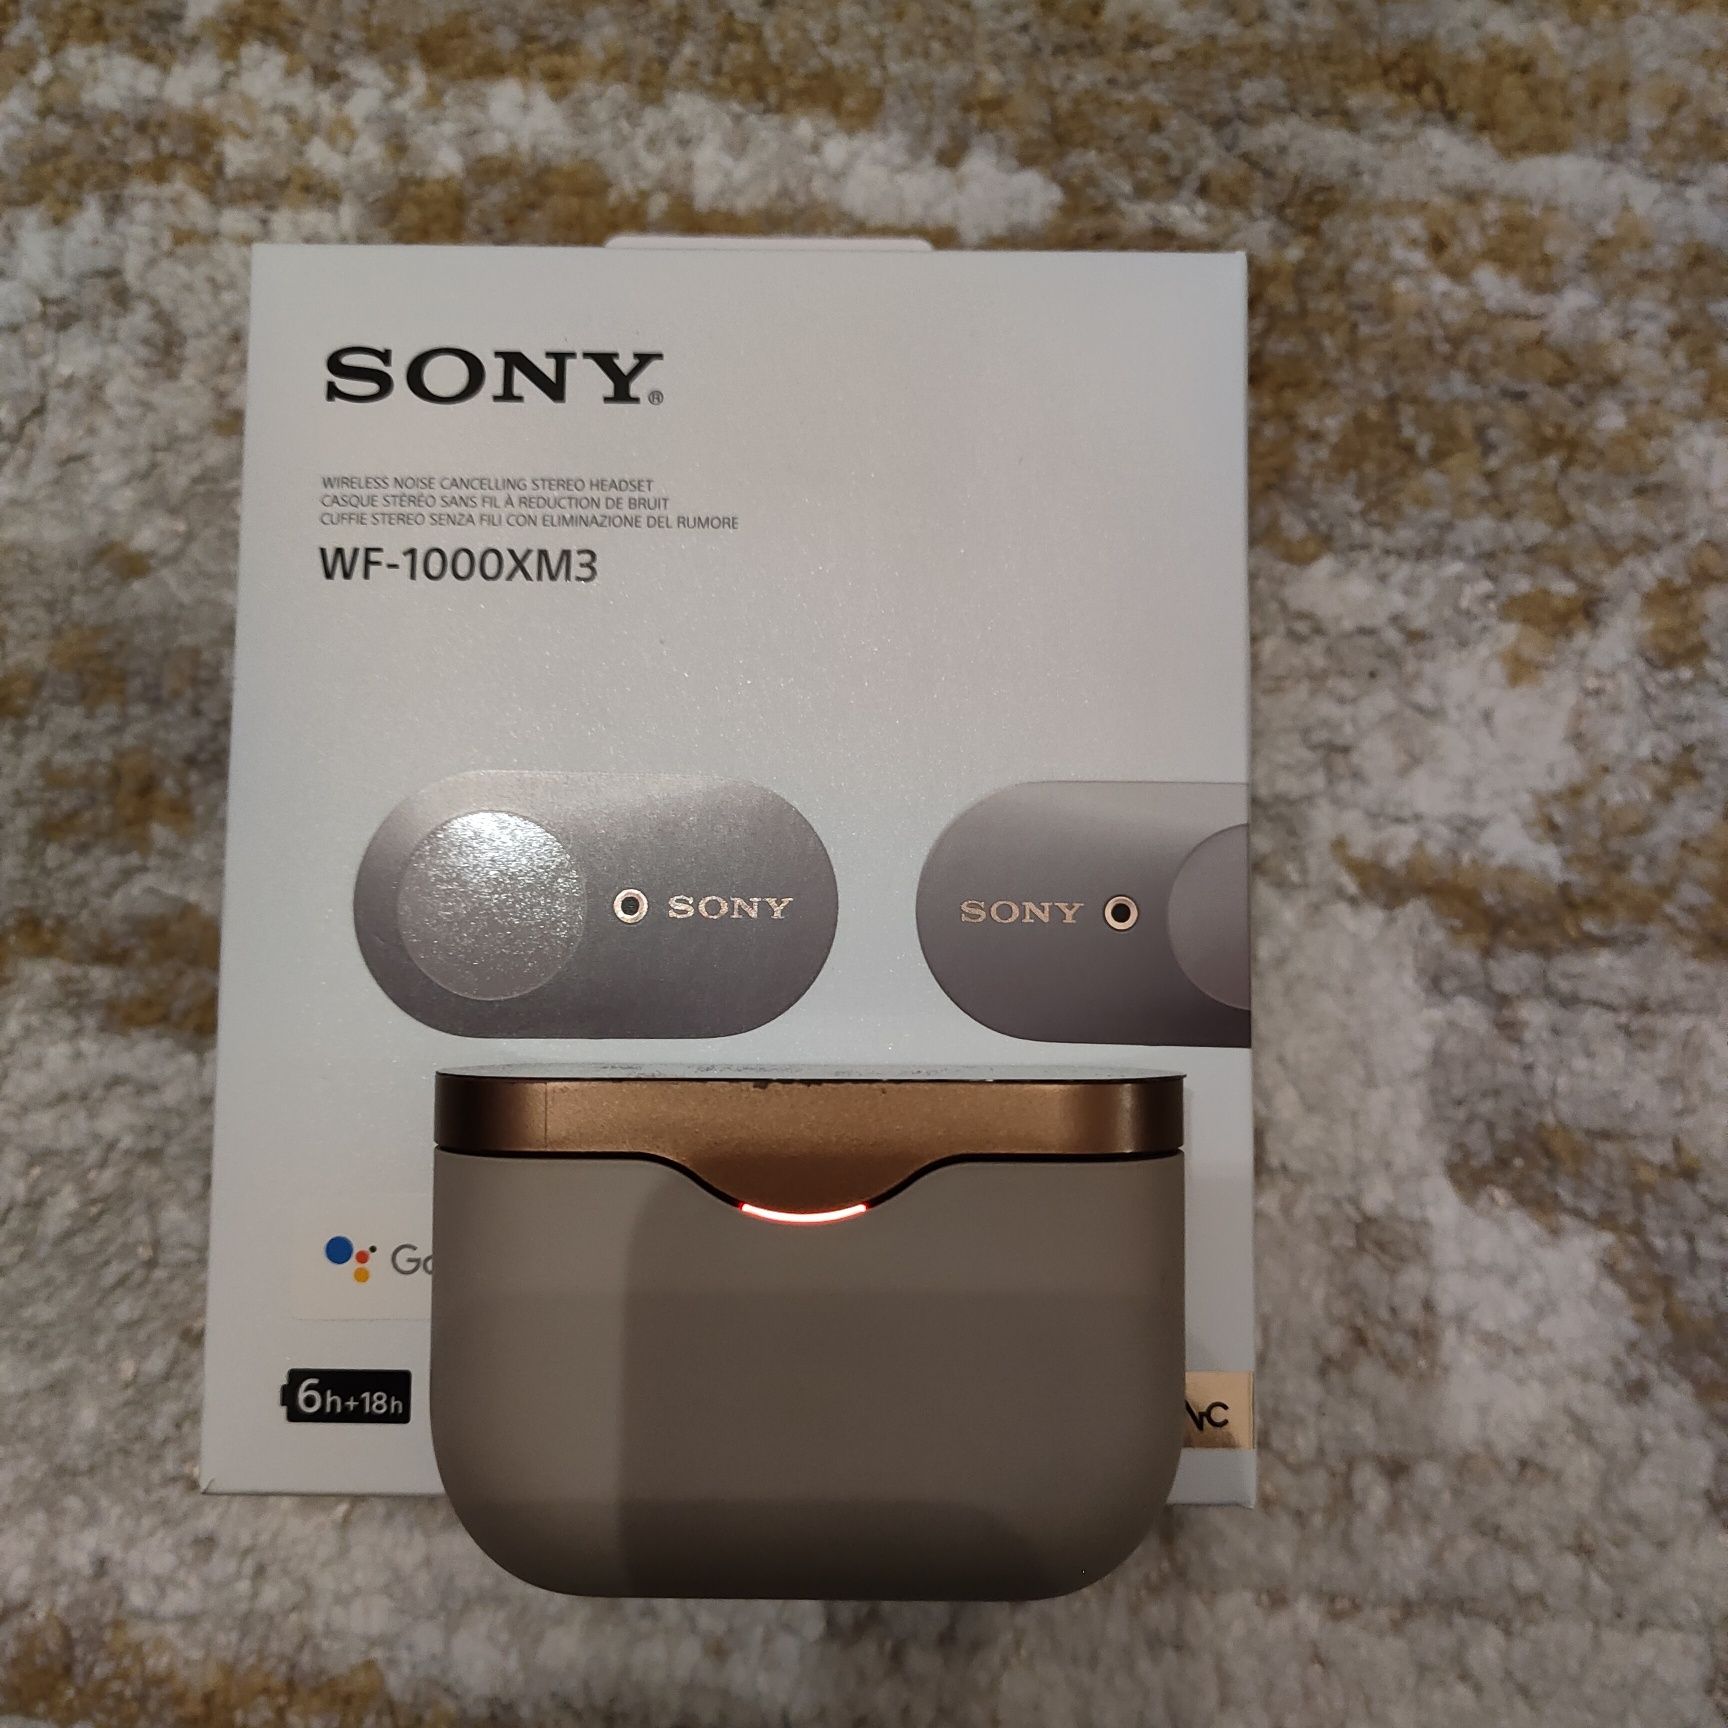 Sony WF-1000XM3 wireless